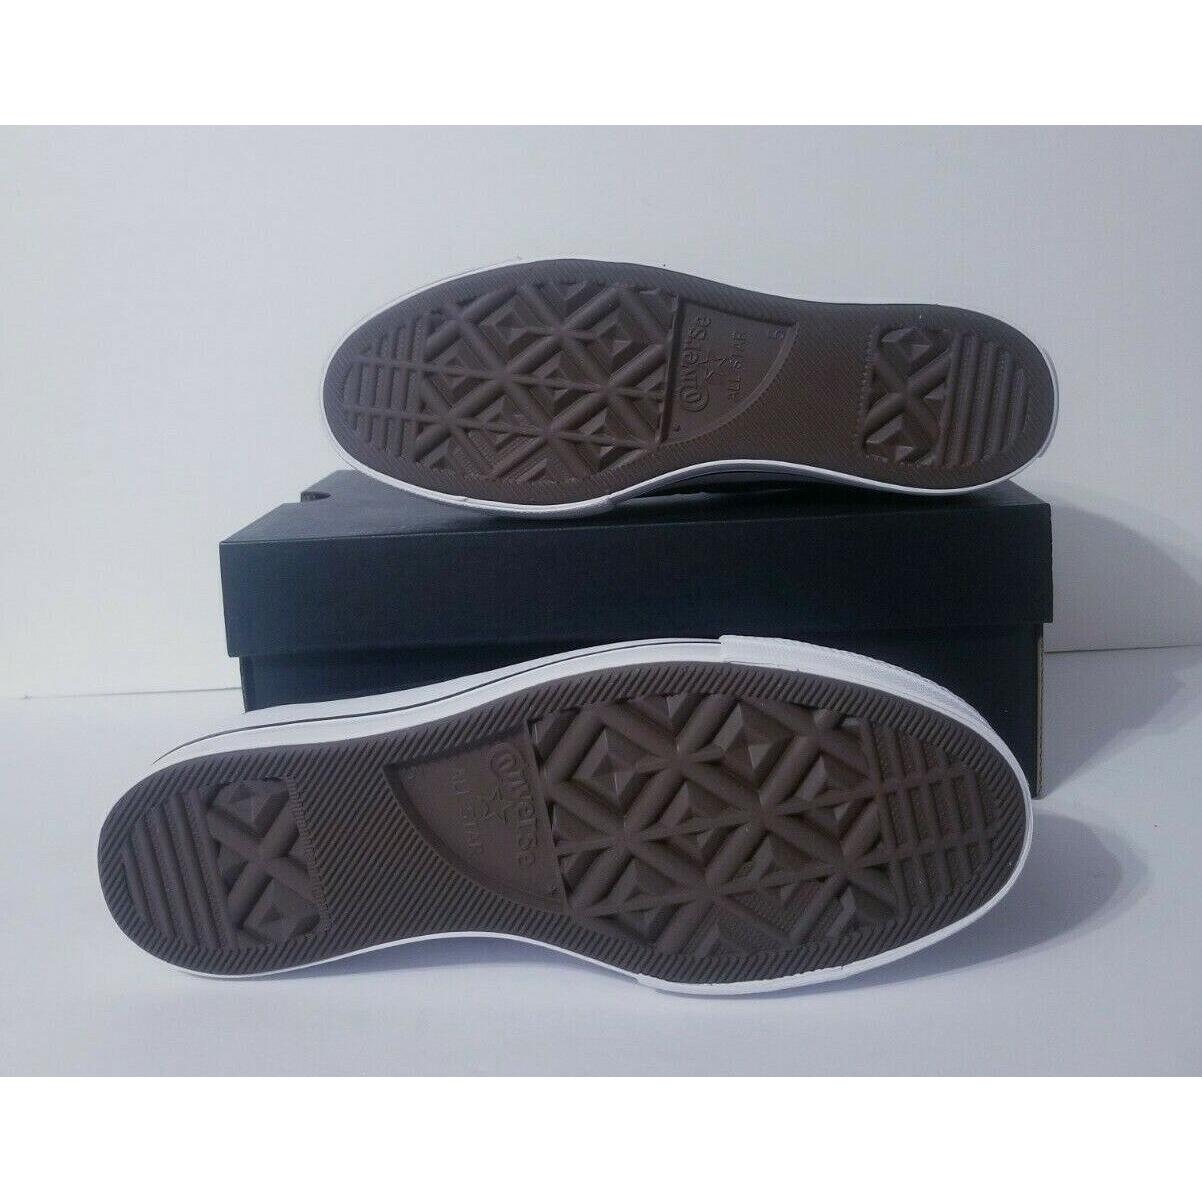 Converse shoes  - Black 4